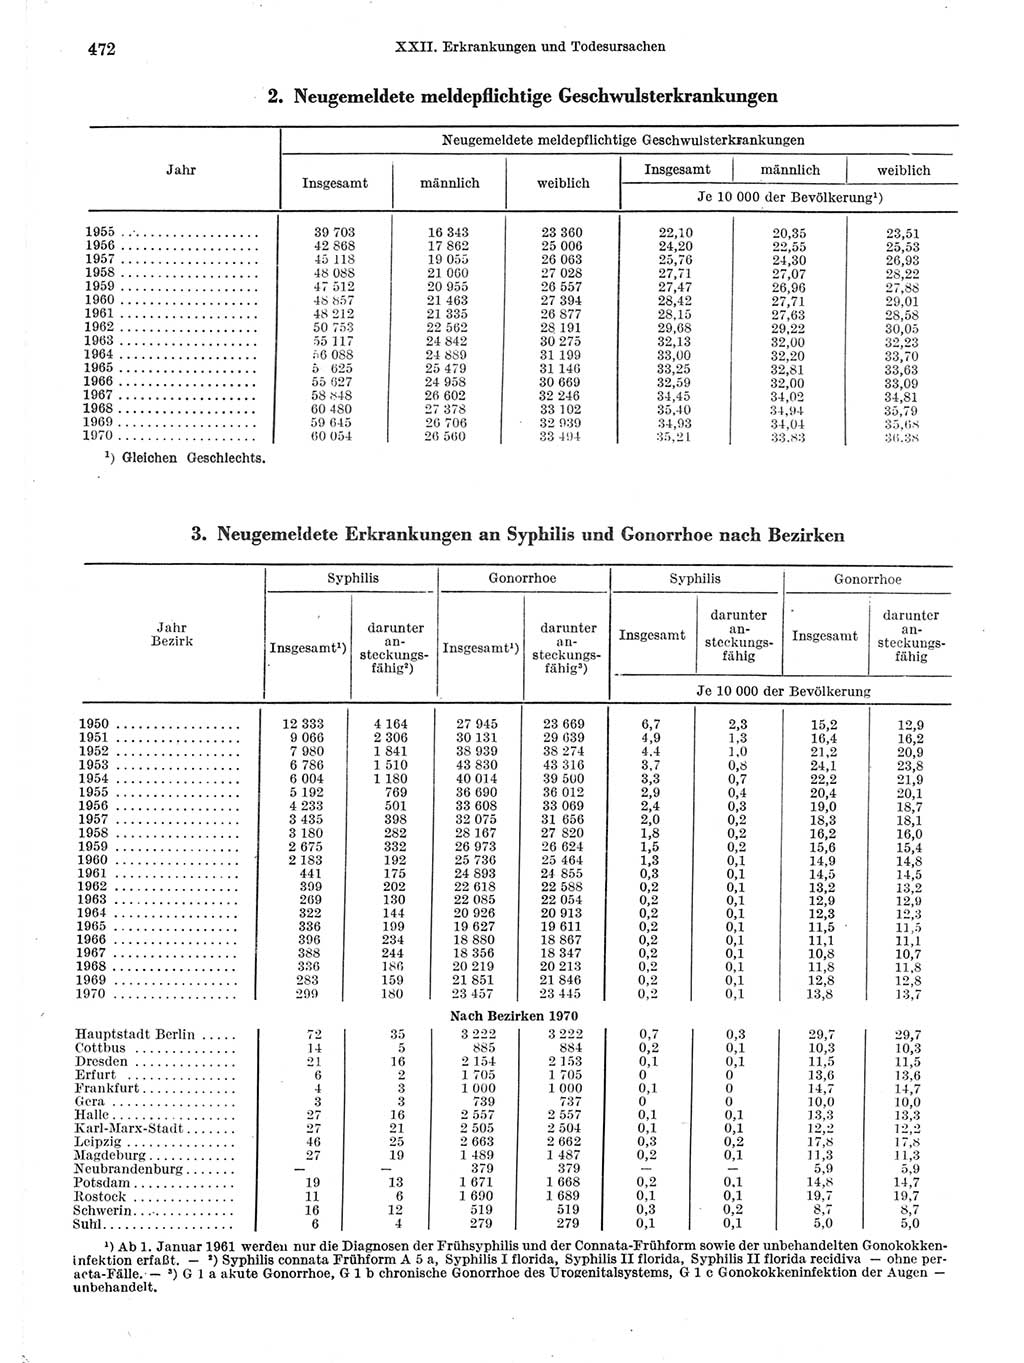 Statistisches Jahrbuch der Deutschen Demokratischen Republik (DDR) 1971, Seite 472 (Stat. Jb. DDR 1971, S. 472)